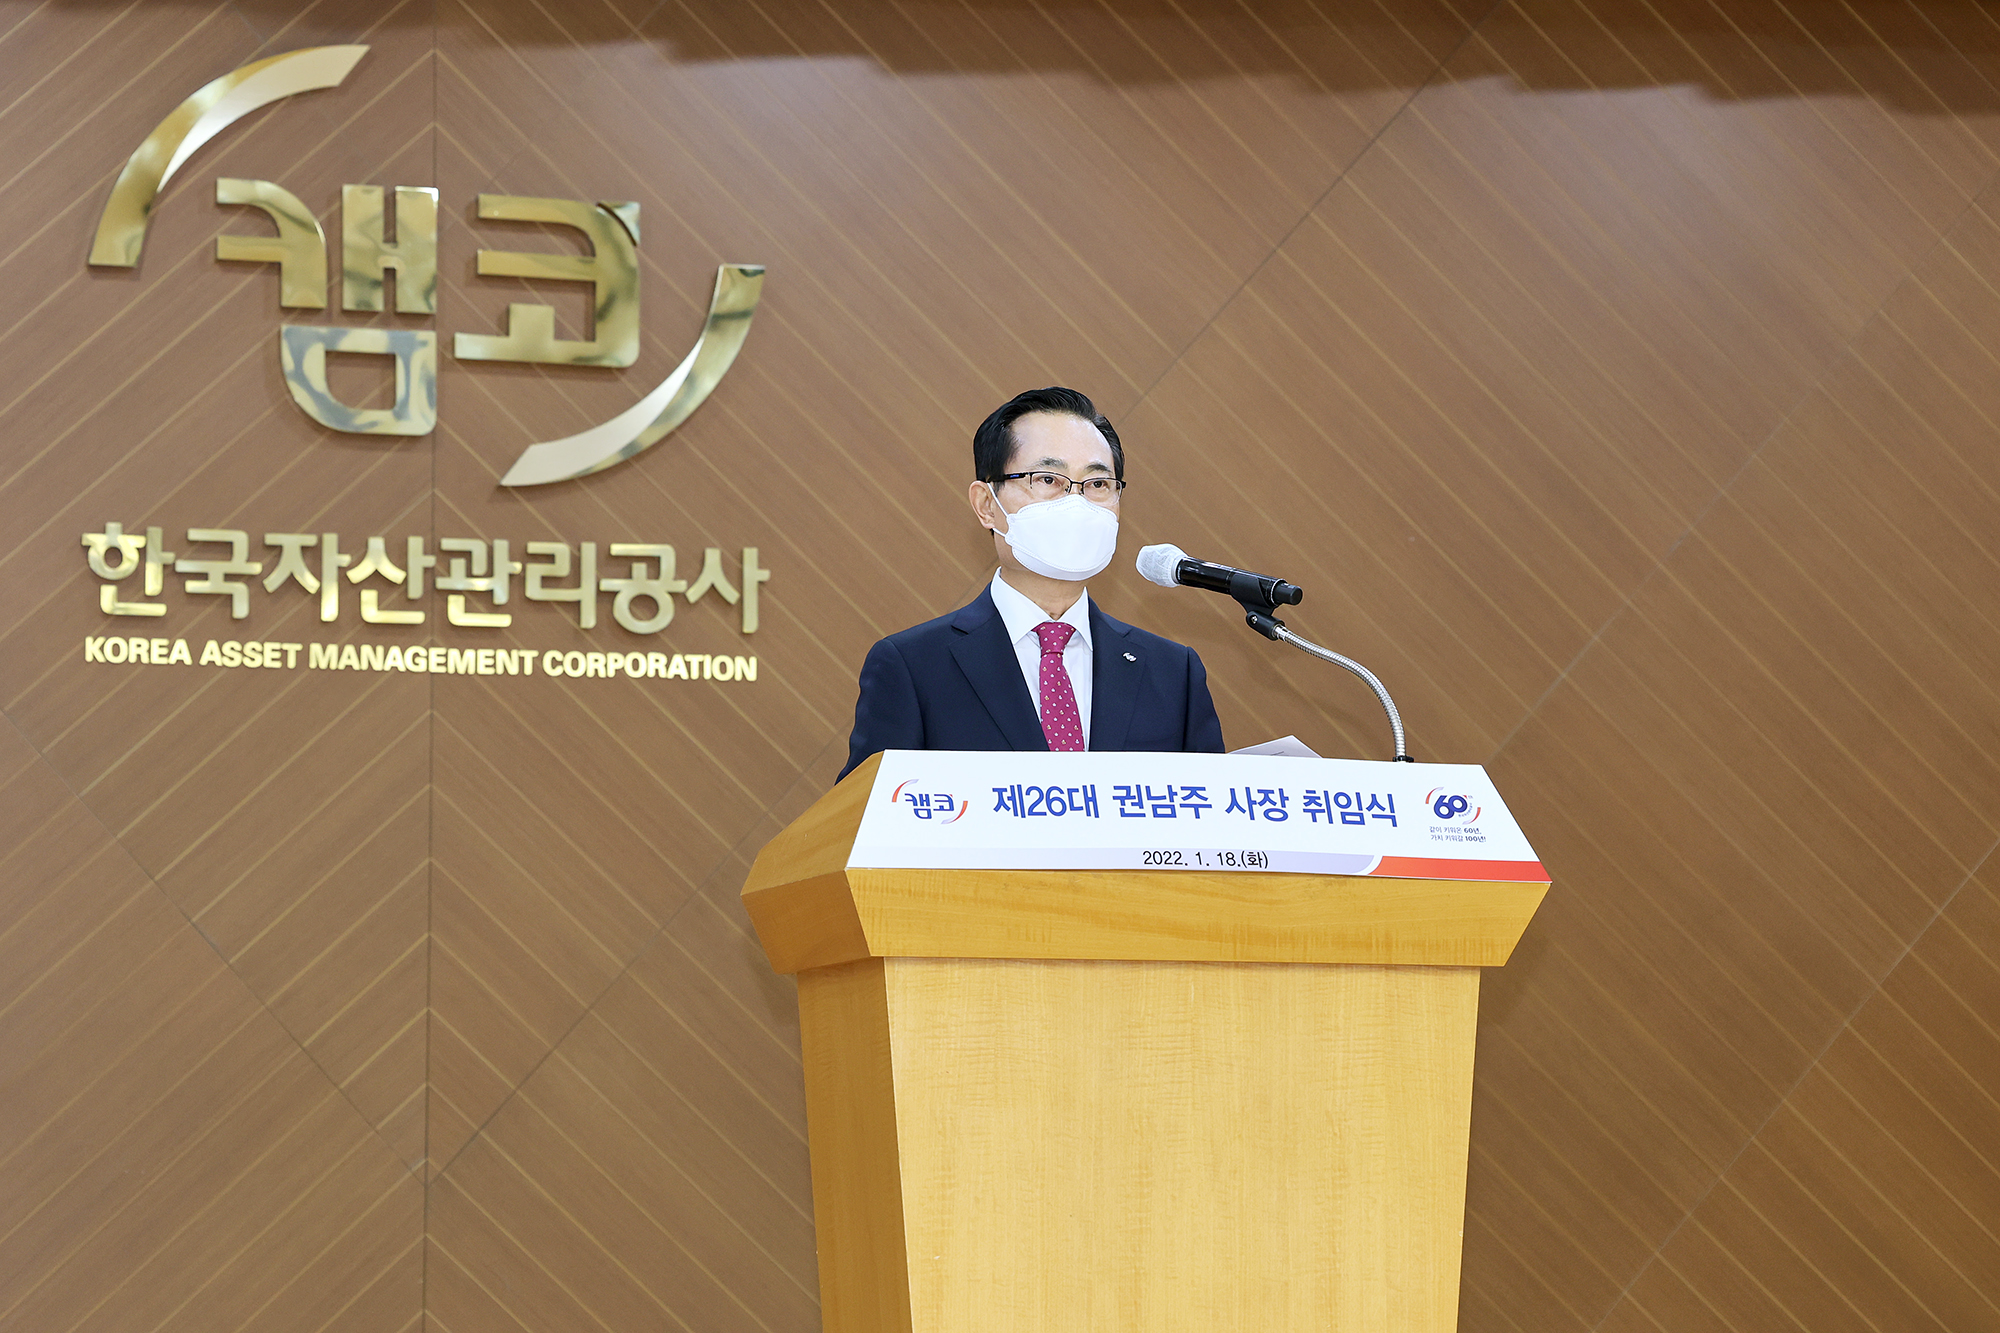 1월 18일(화) 부산국제금융센터(BIFC) 본사 3층 캠코마루에서 열린 취임식에서 권남주 한국자산관리공사 신임 사장이 취임사를 하고 있다.